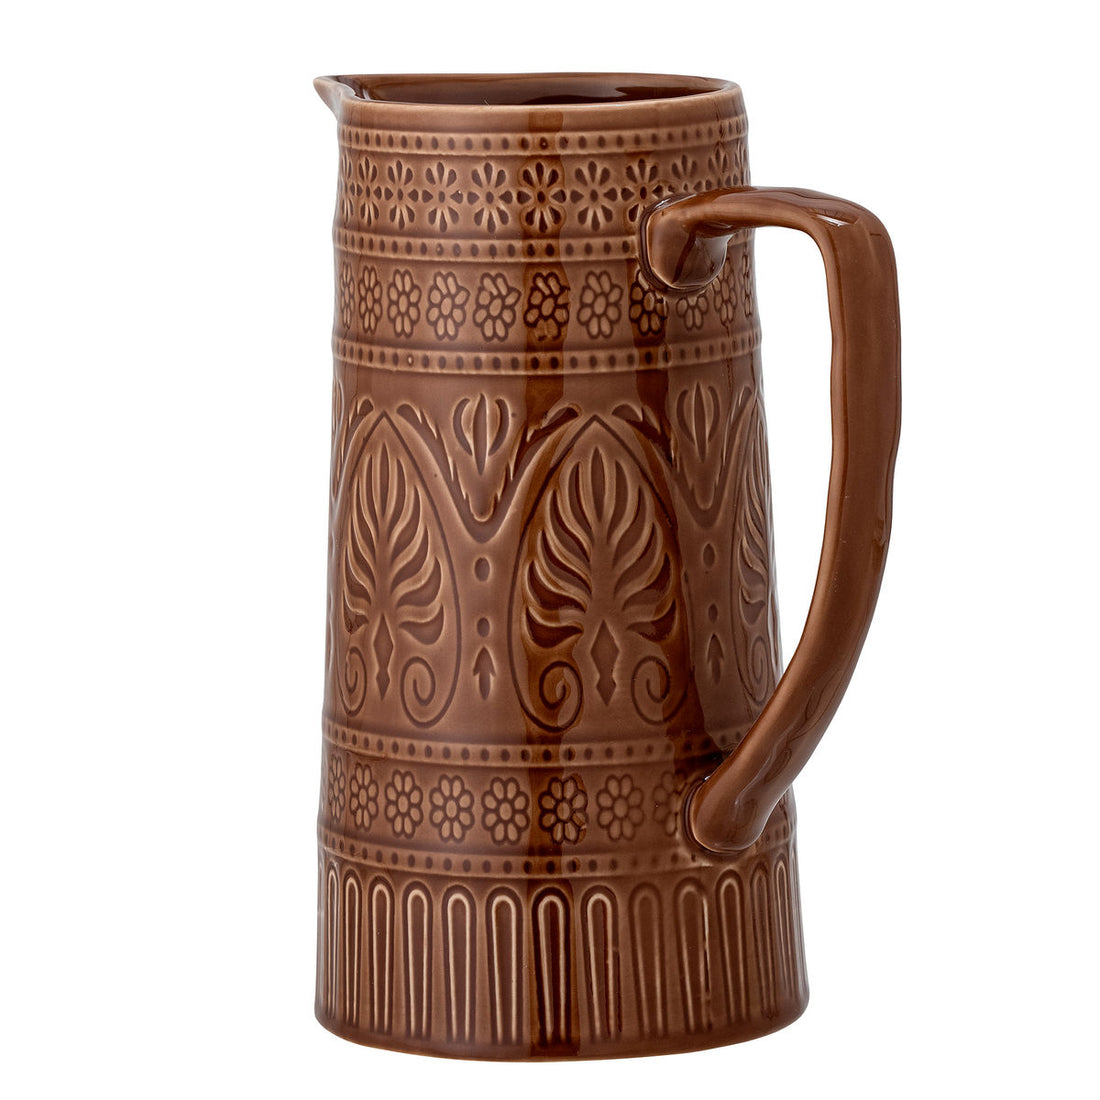 Bloomingville rani pitcher, brown, stoneware